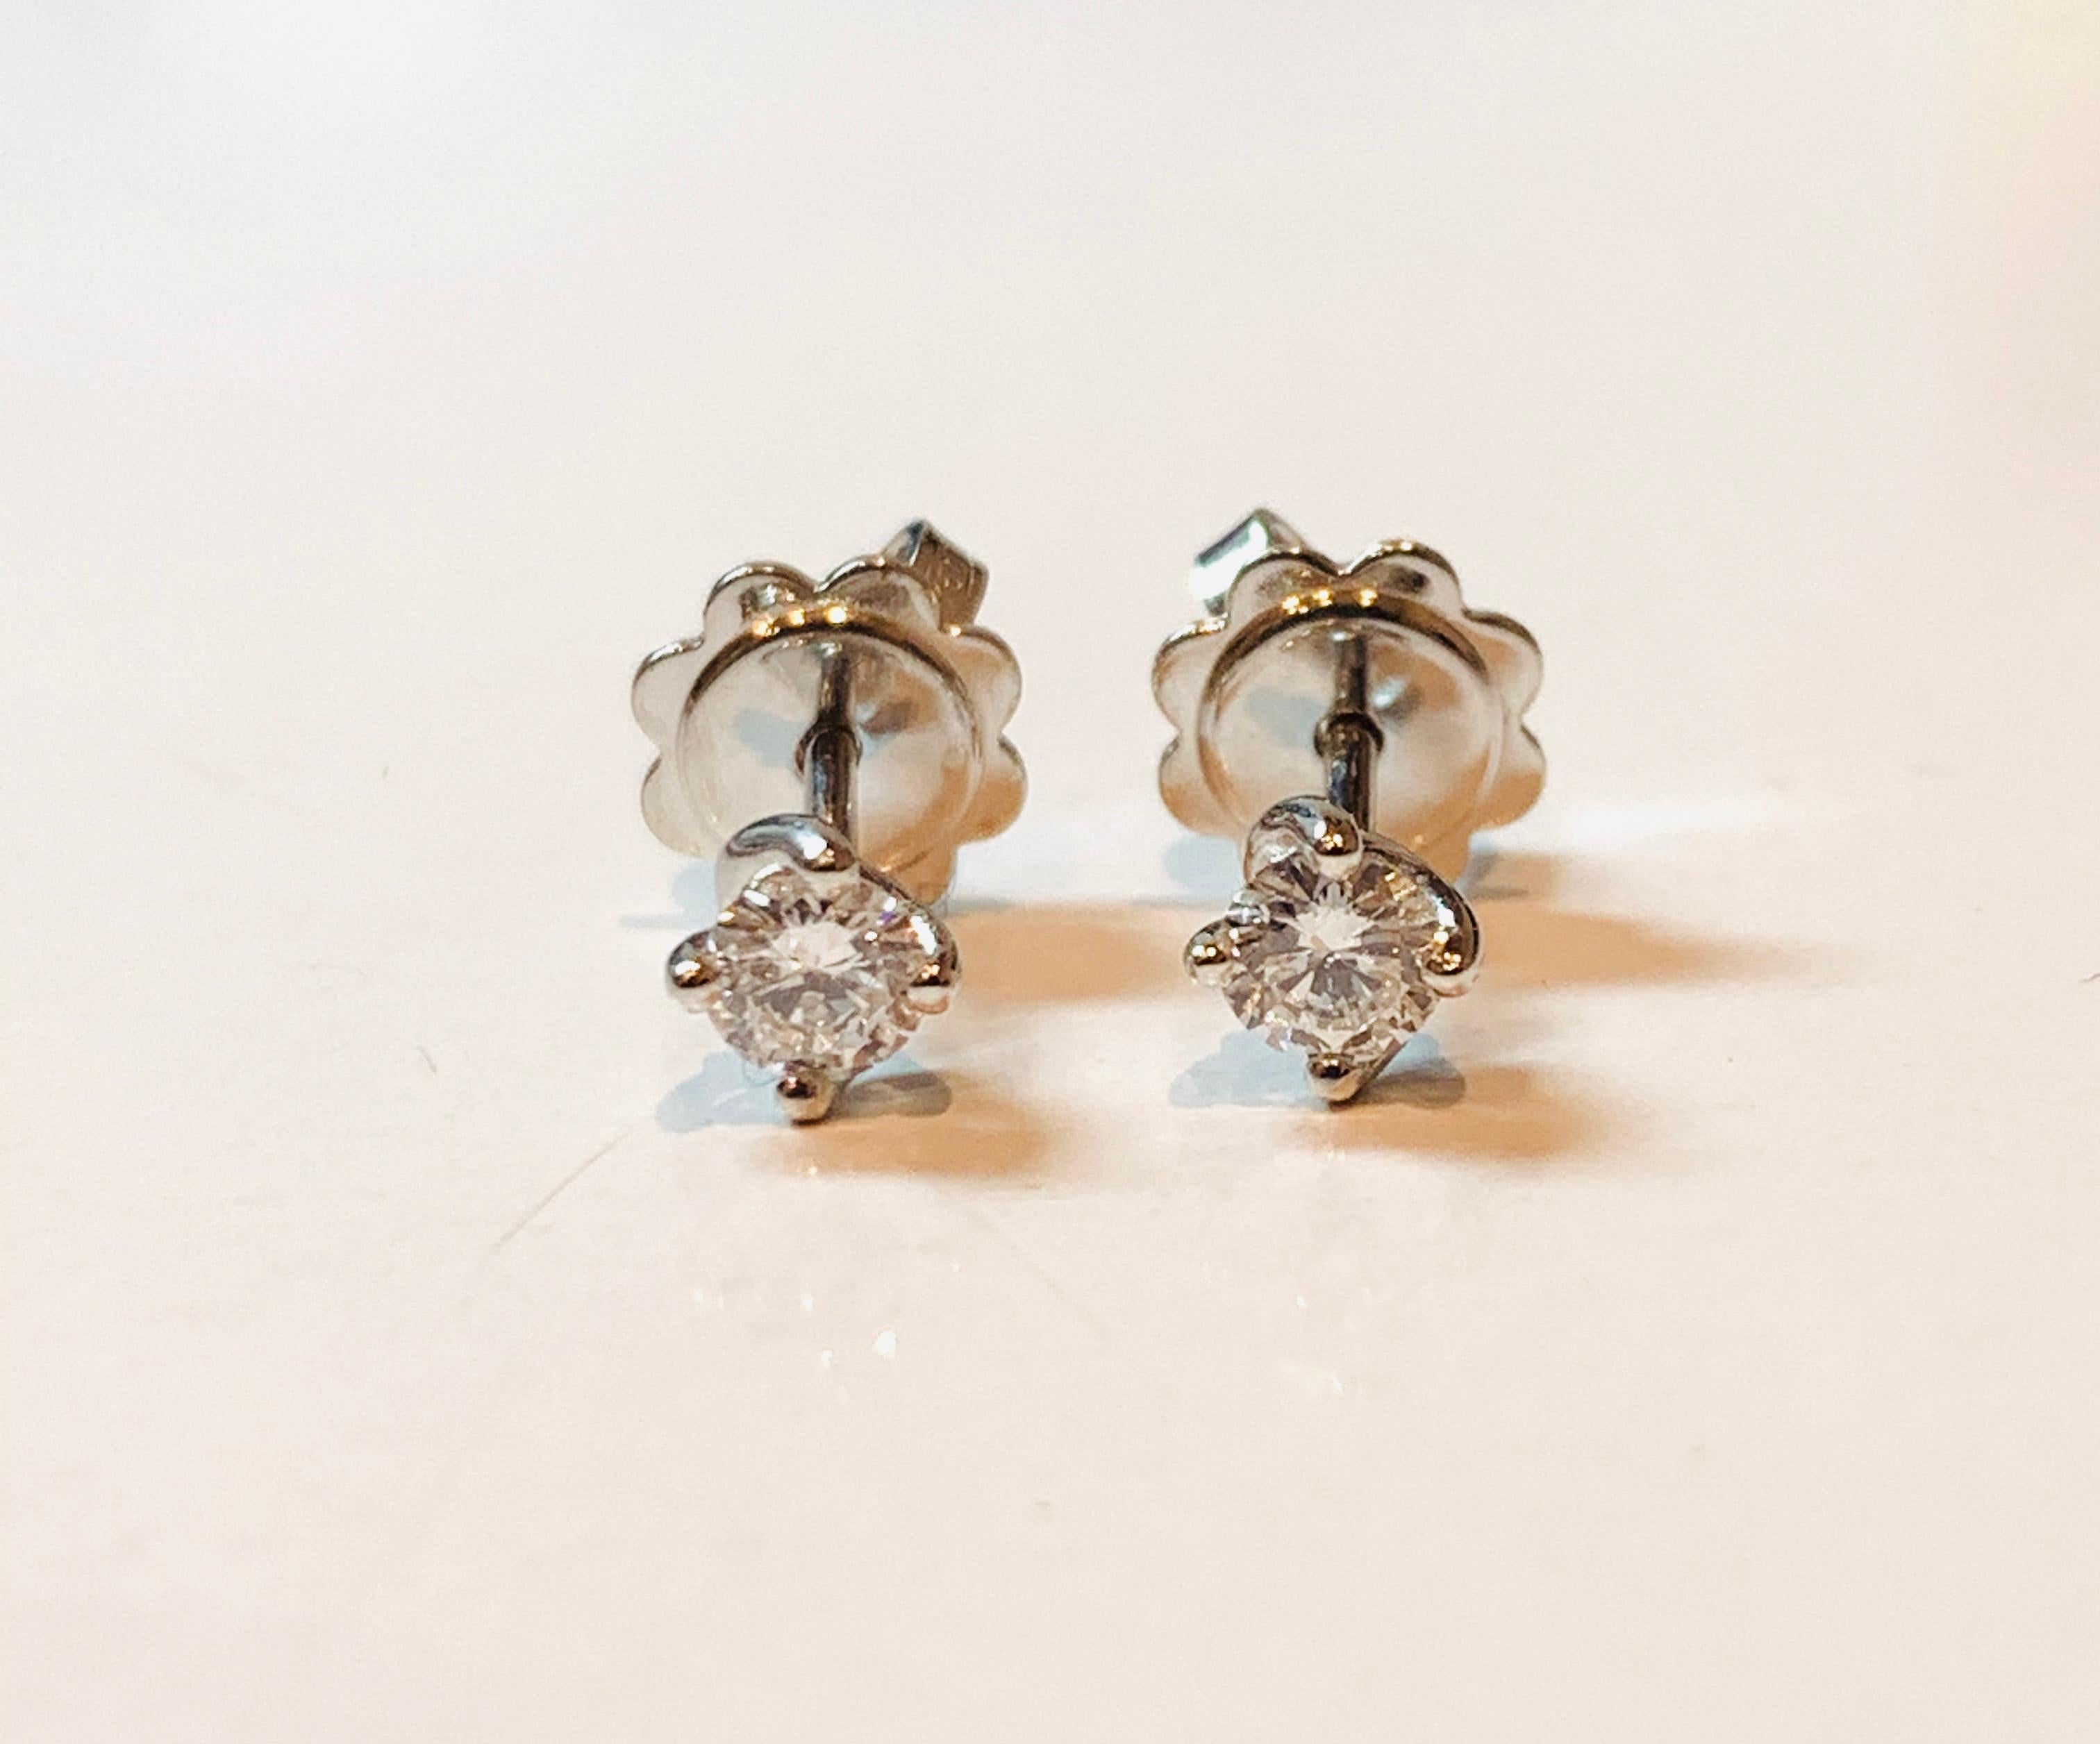 Diese zertifizierten 0,14-Karat-Diamant-Ohrstecker sind aus der HRD Antwerpener Blumenkollektion. 

Der mit 4 gedrehten Zacken versehene Diamant sitzt in der Fassung aus 18 Karat Weißgold und wird mit Schmetterlingsverschlüssen am Ohr befestigt.